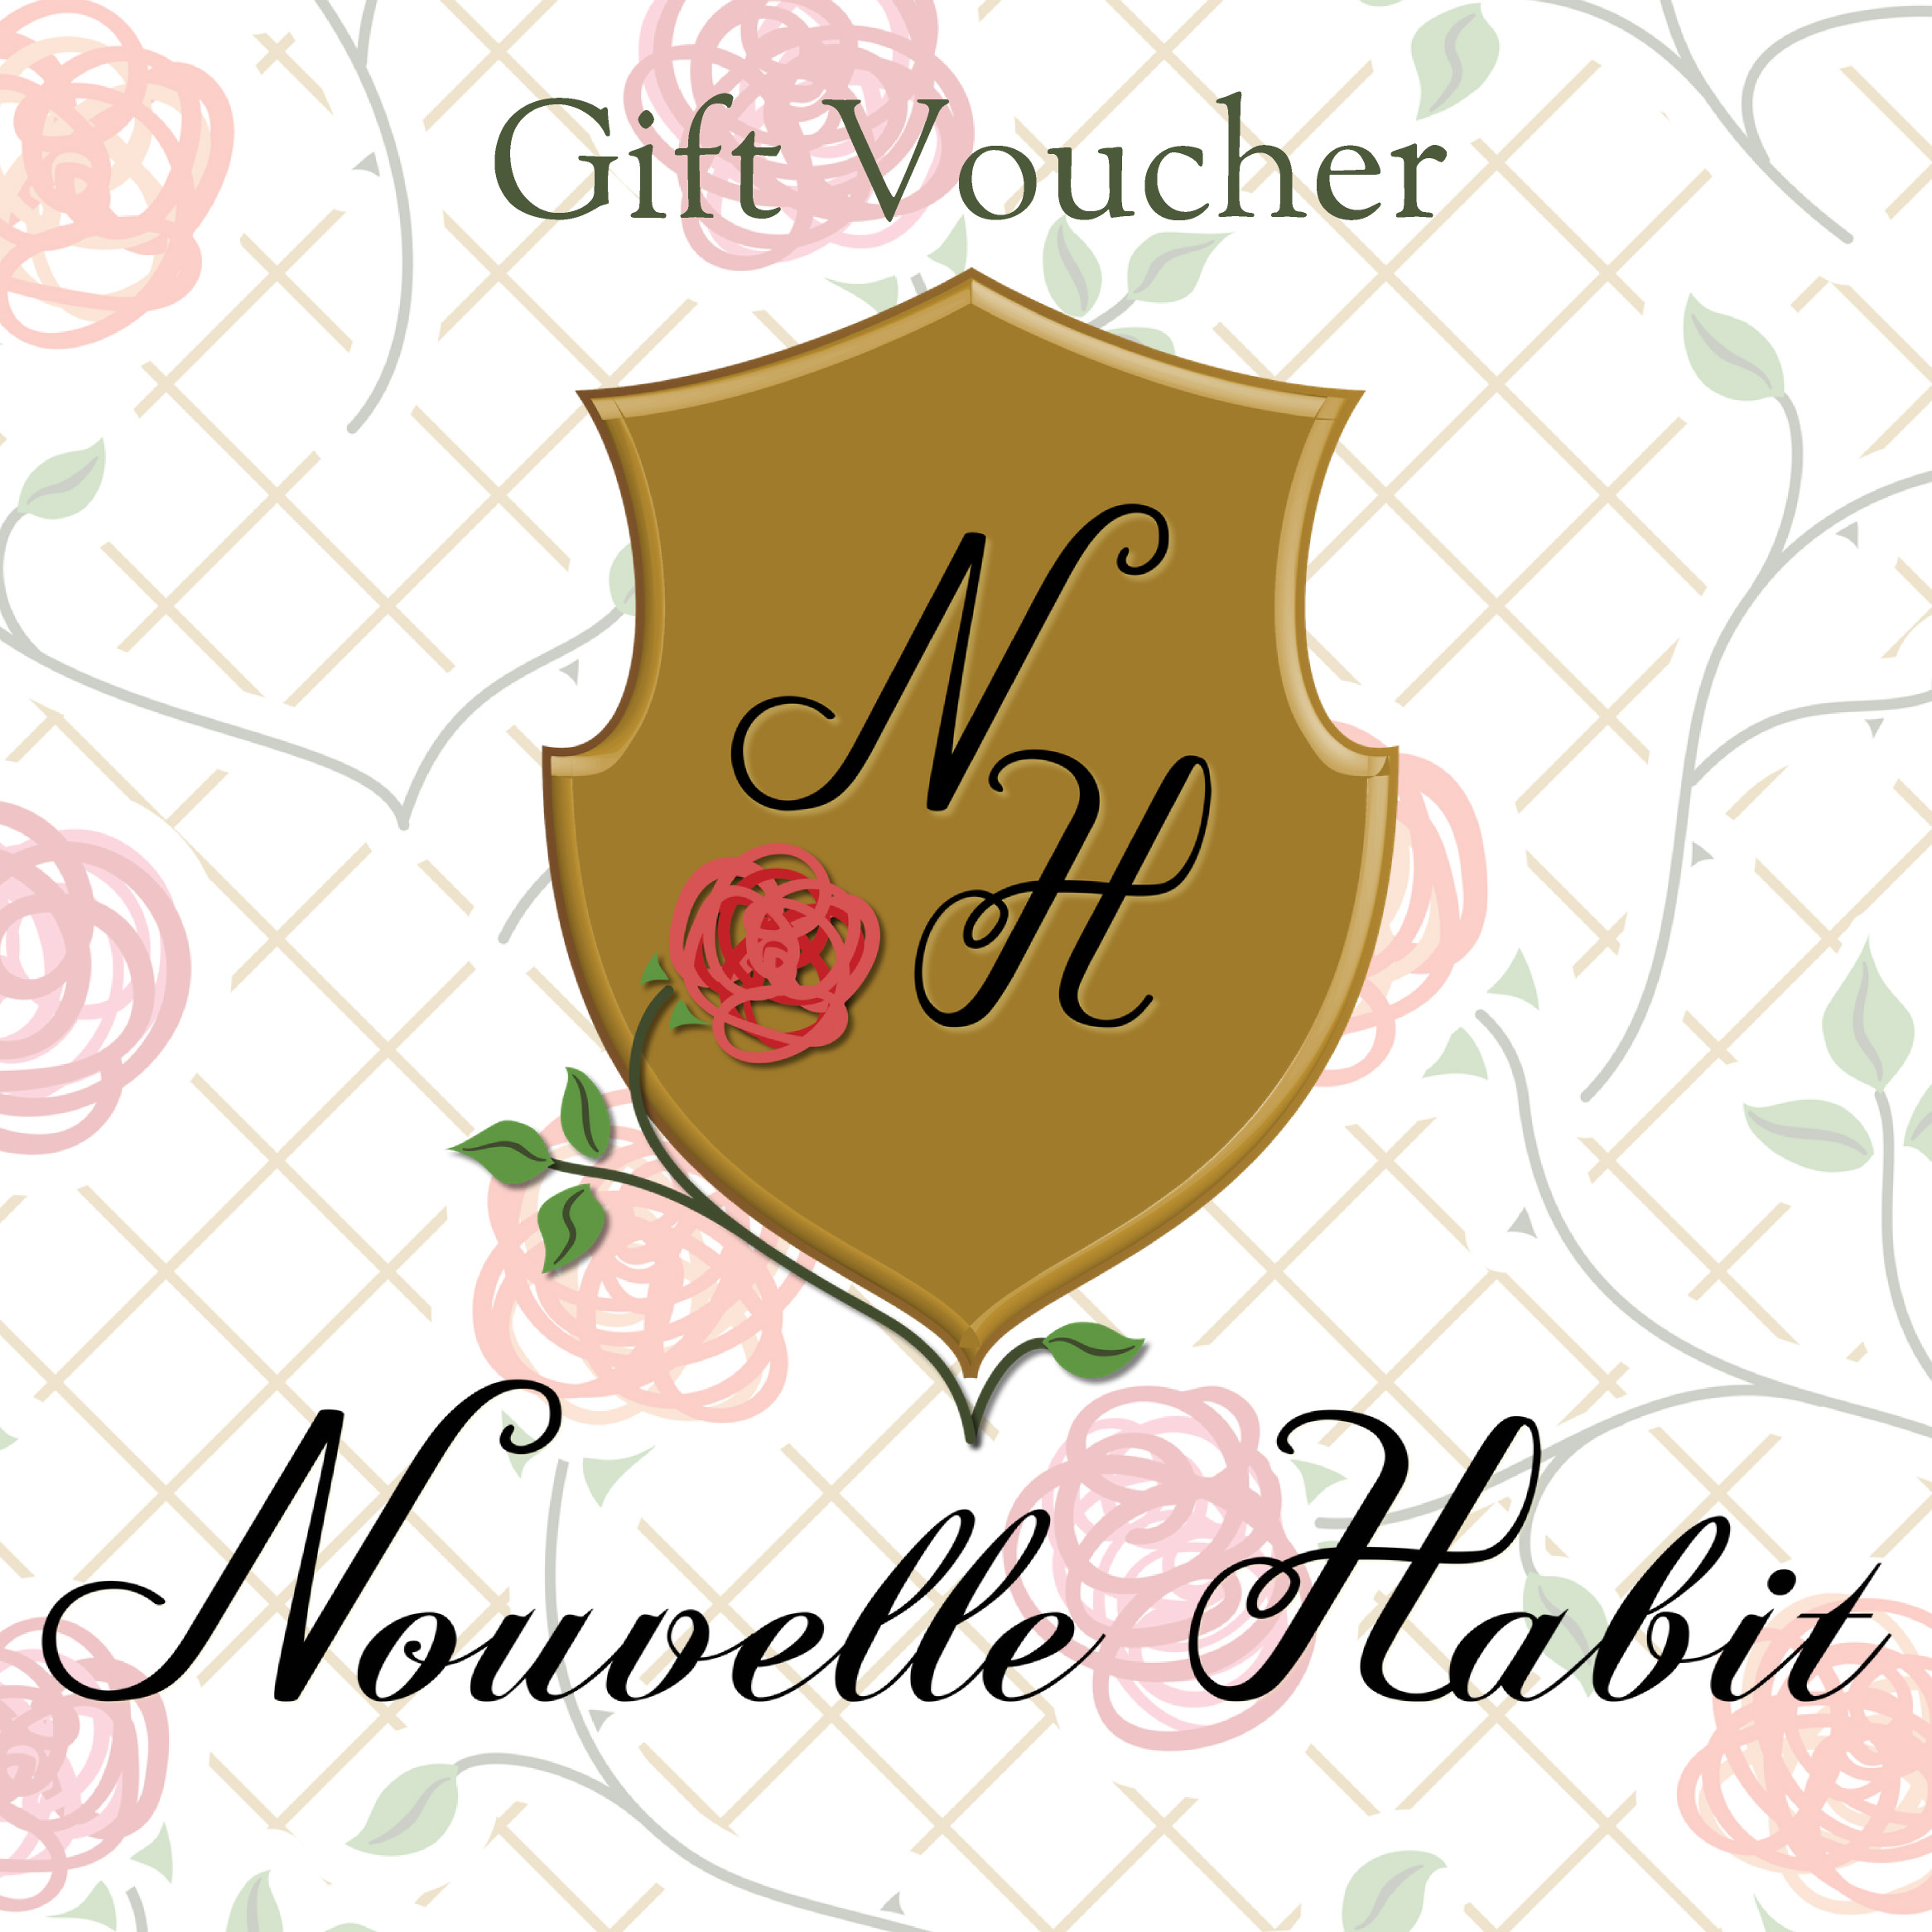 Gift ideas - Gift Voucher - Nouvelle Habit